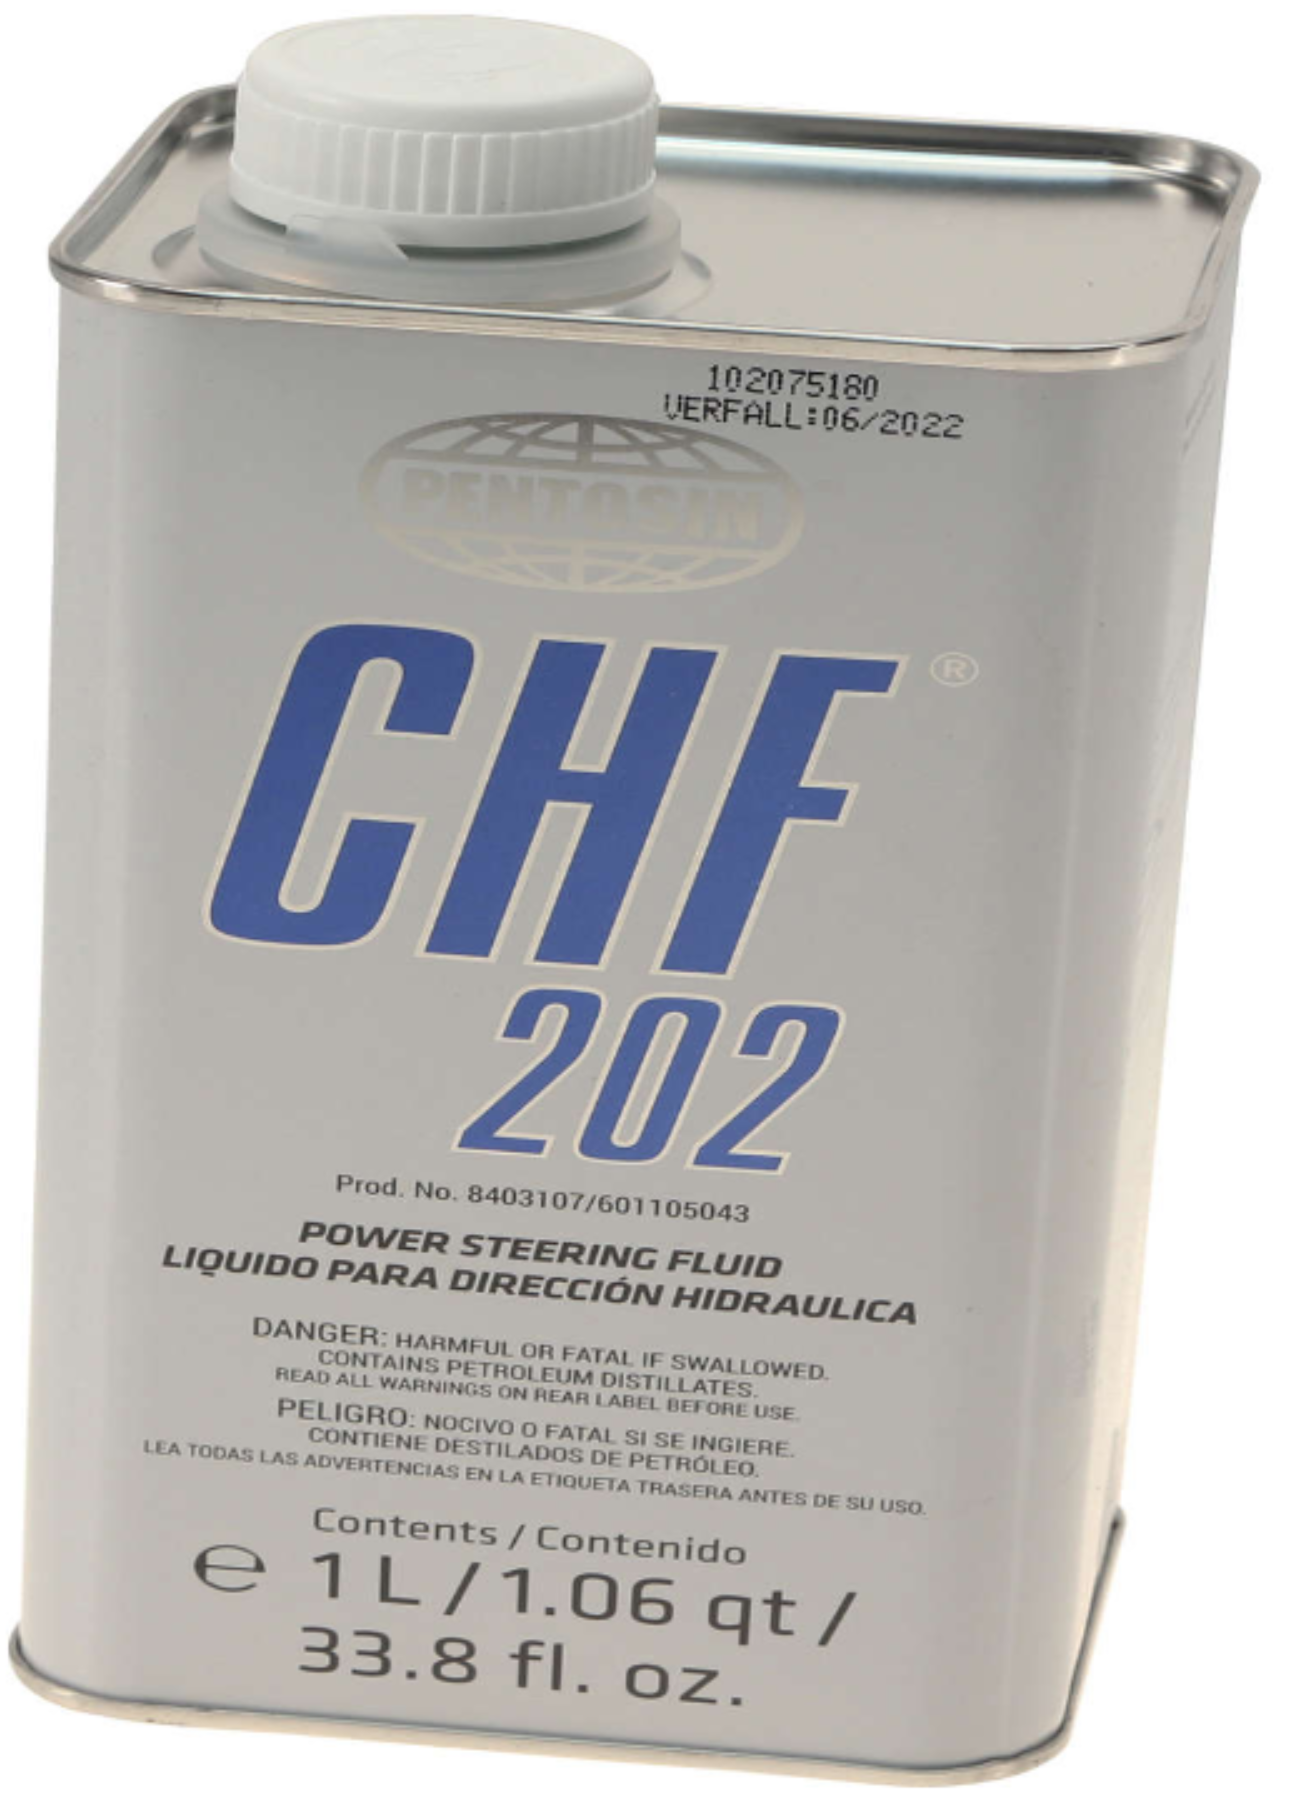 Pentosin Hydraulic Fluid CHF202 1L